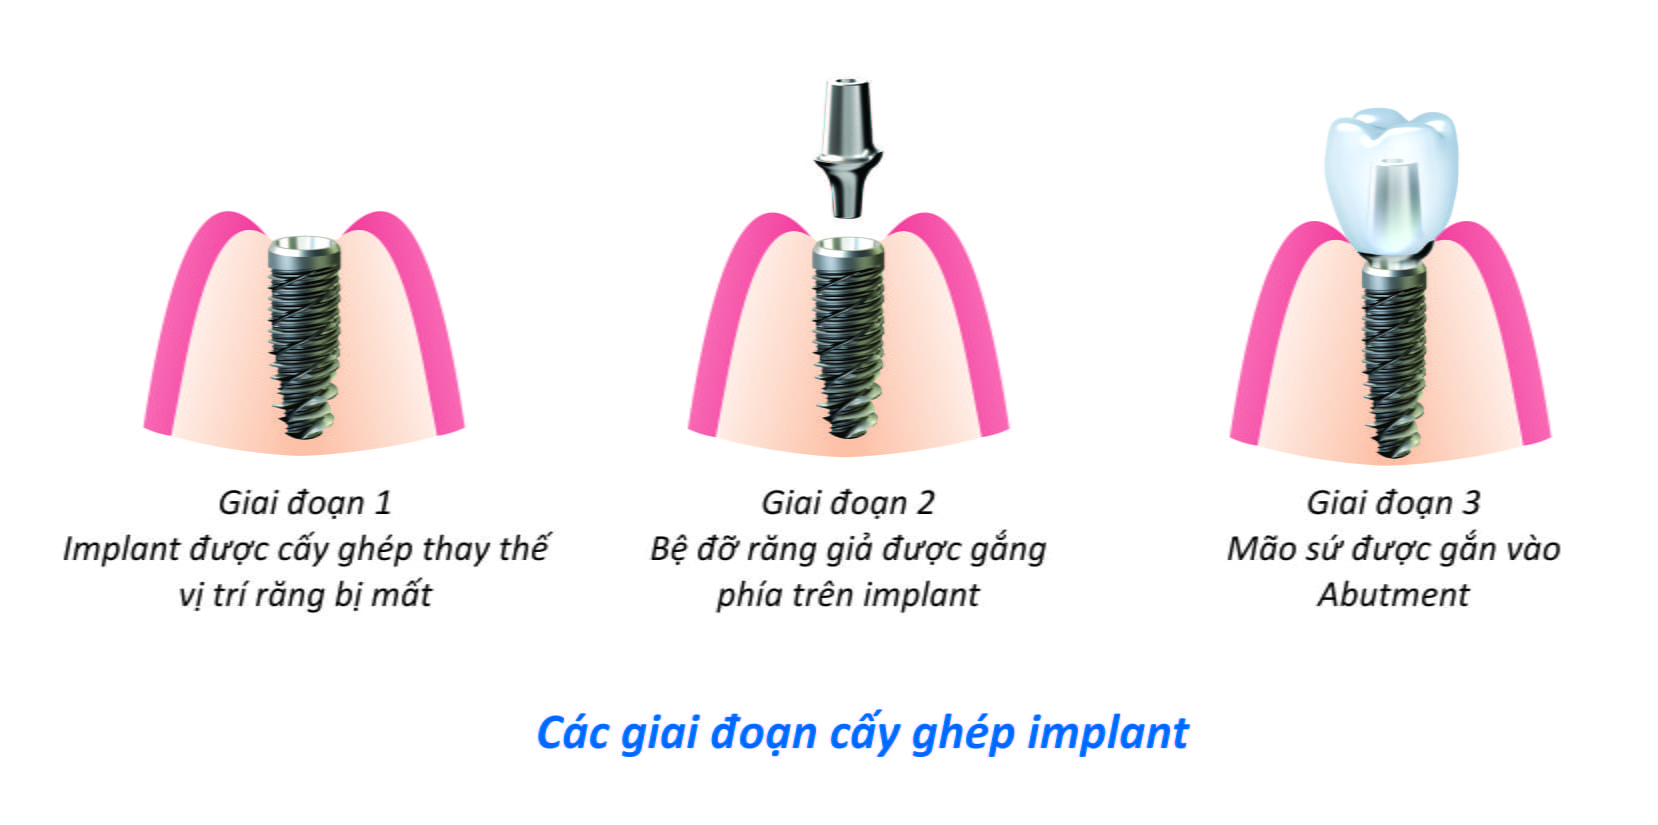 Cay ghep implant trong truong hop nao